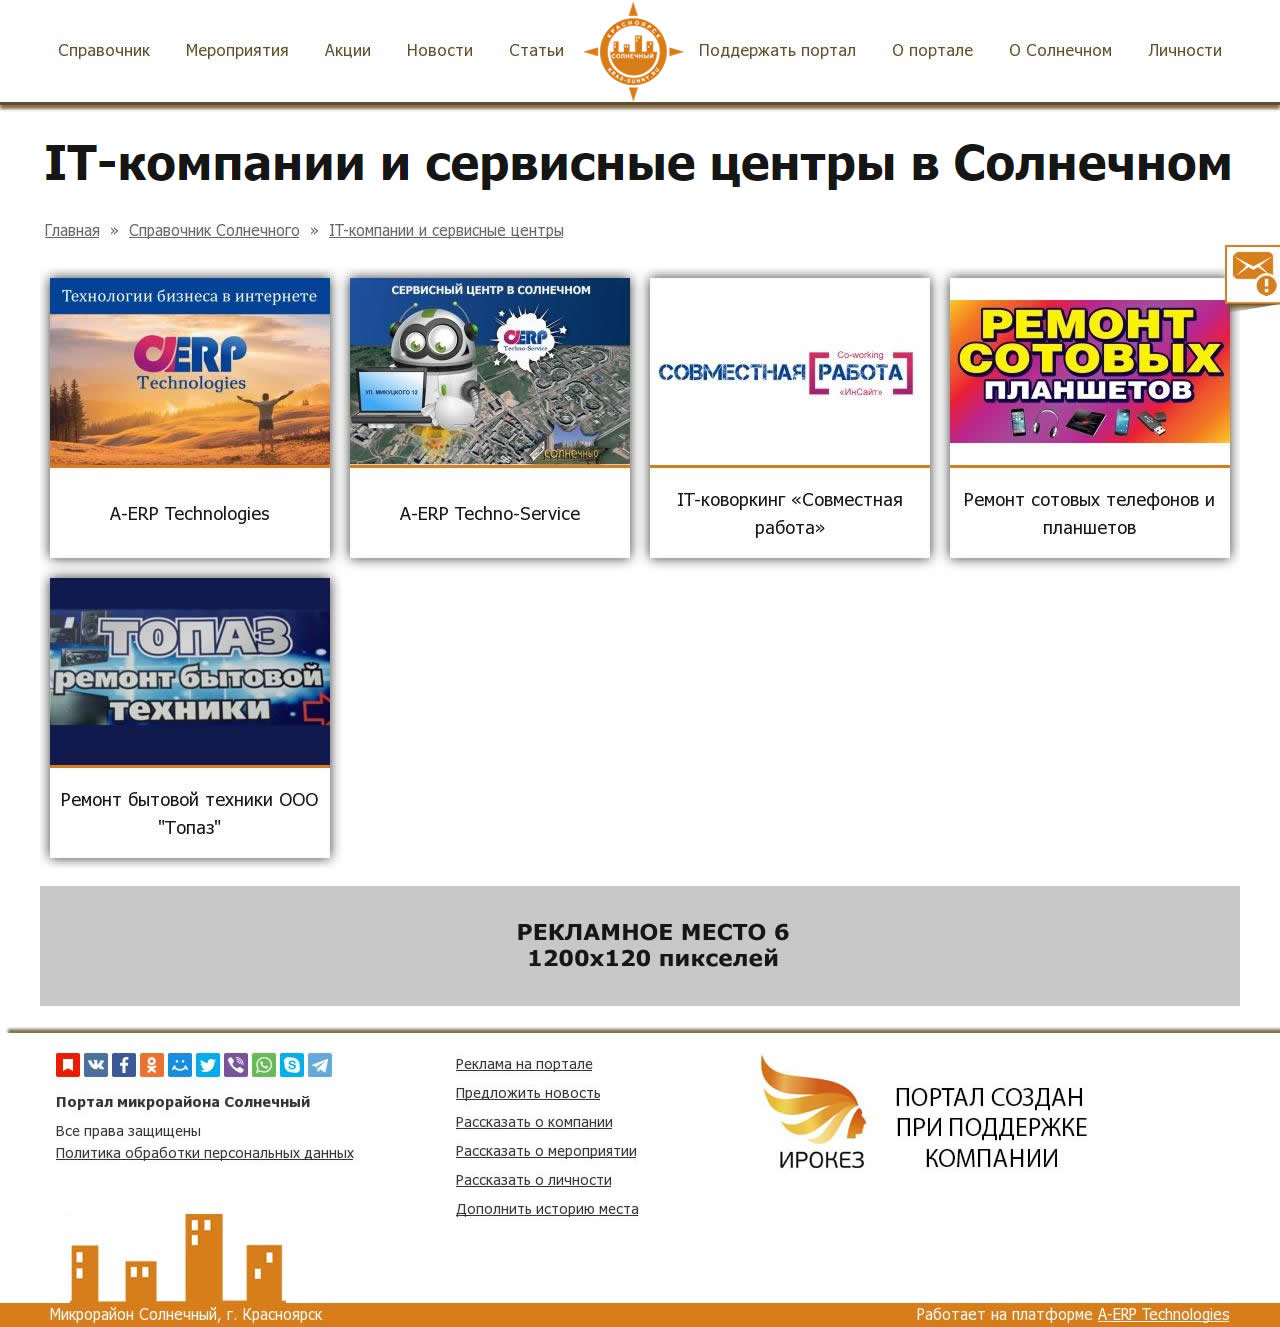 Рекламные места на страницах разделов каталогов портала Солнечный